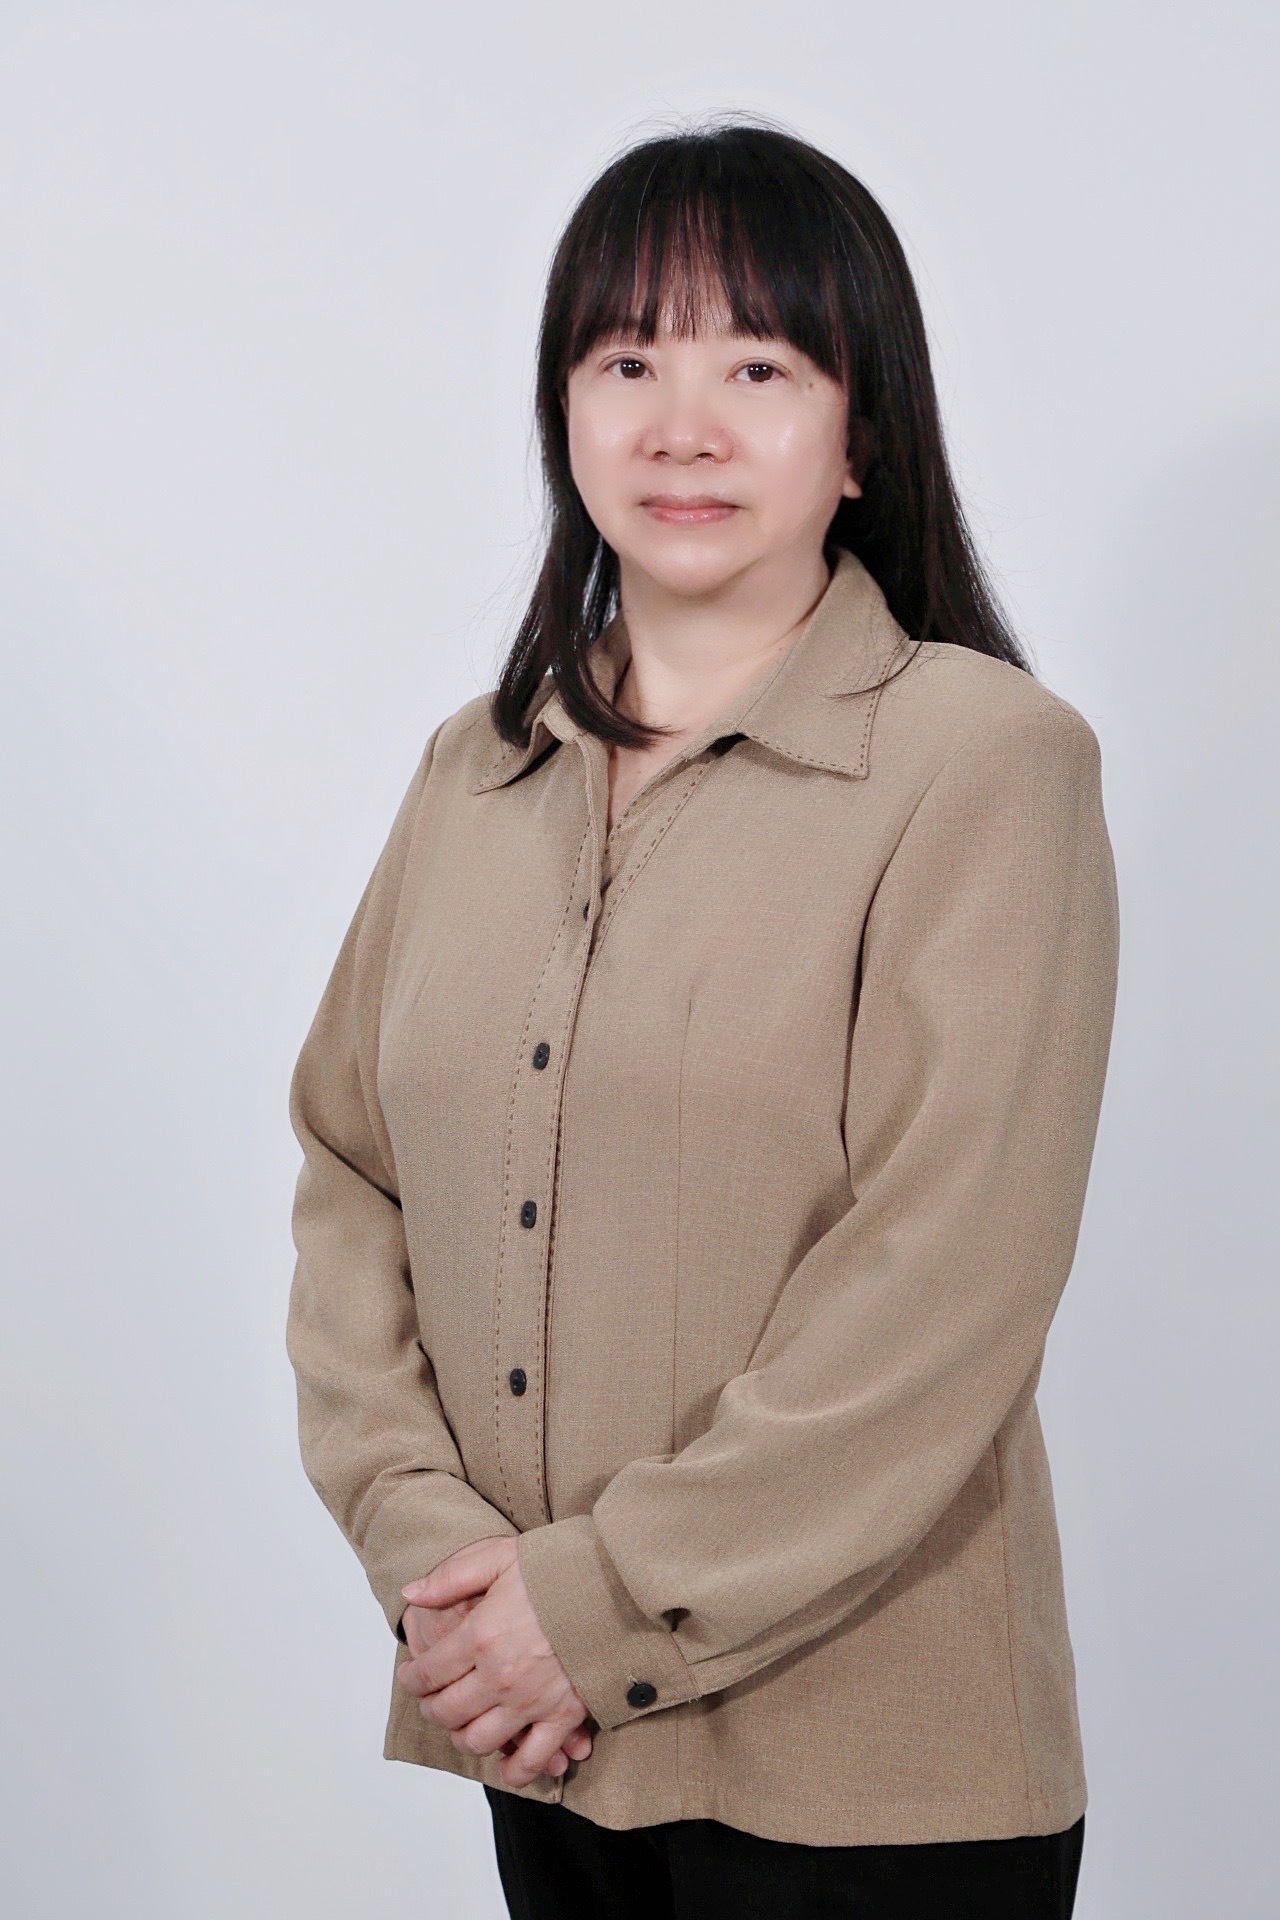 Shu-Feng Chang teacher's personal photo